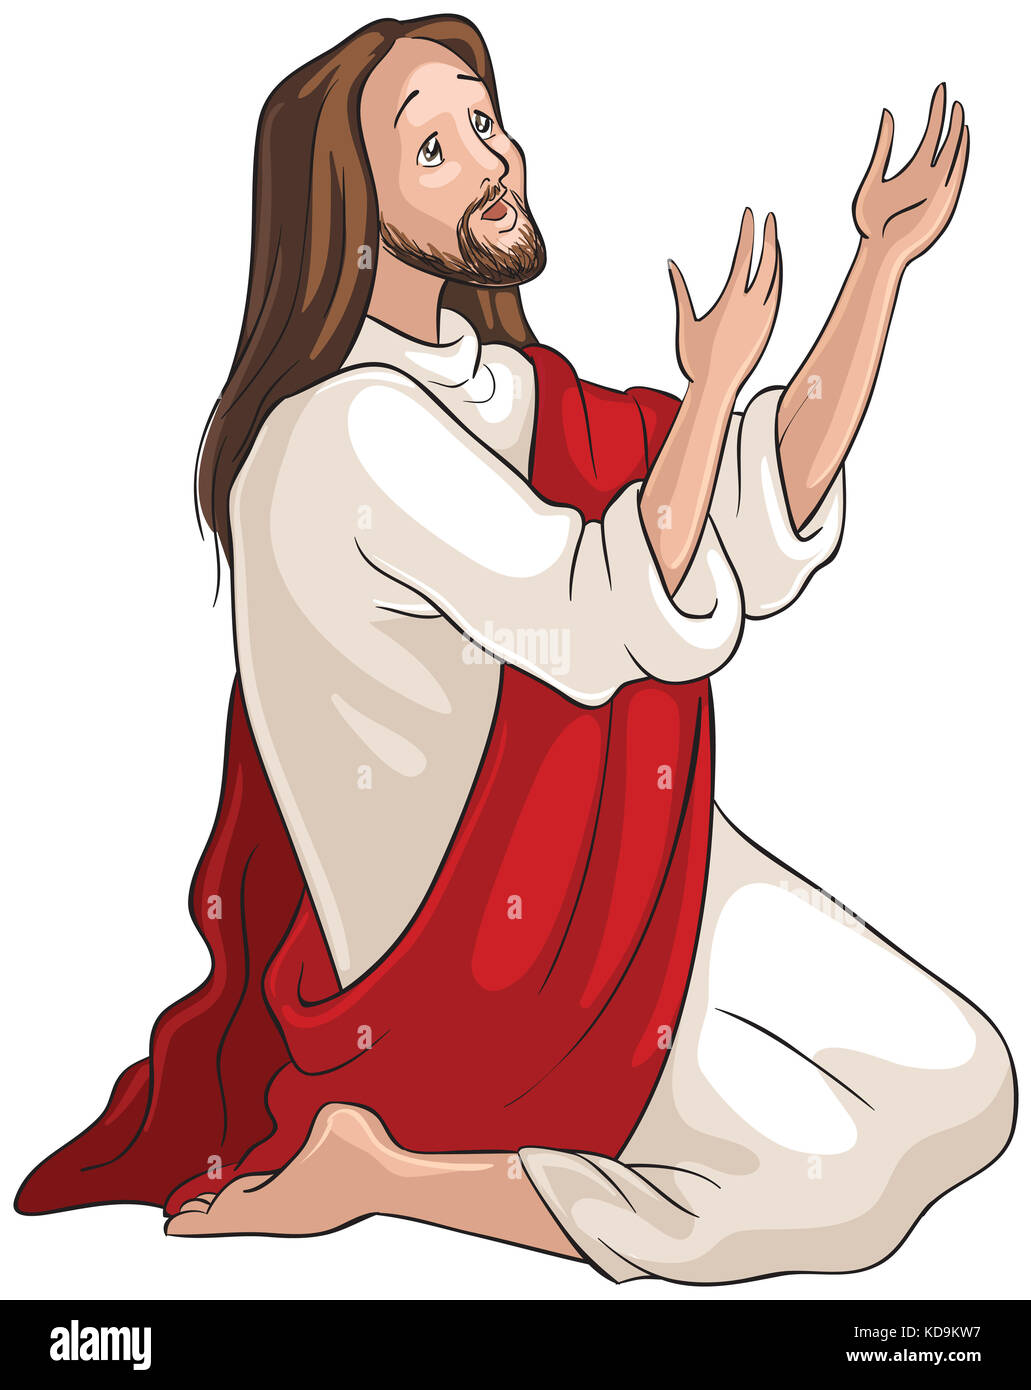 Jésus à genoux dans la prière. Christian cartoon illustration Banque D'Images